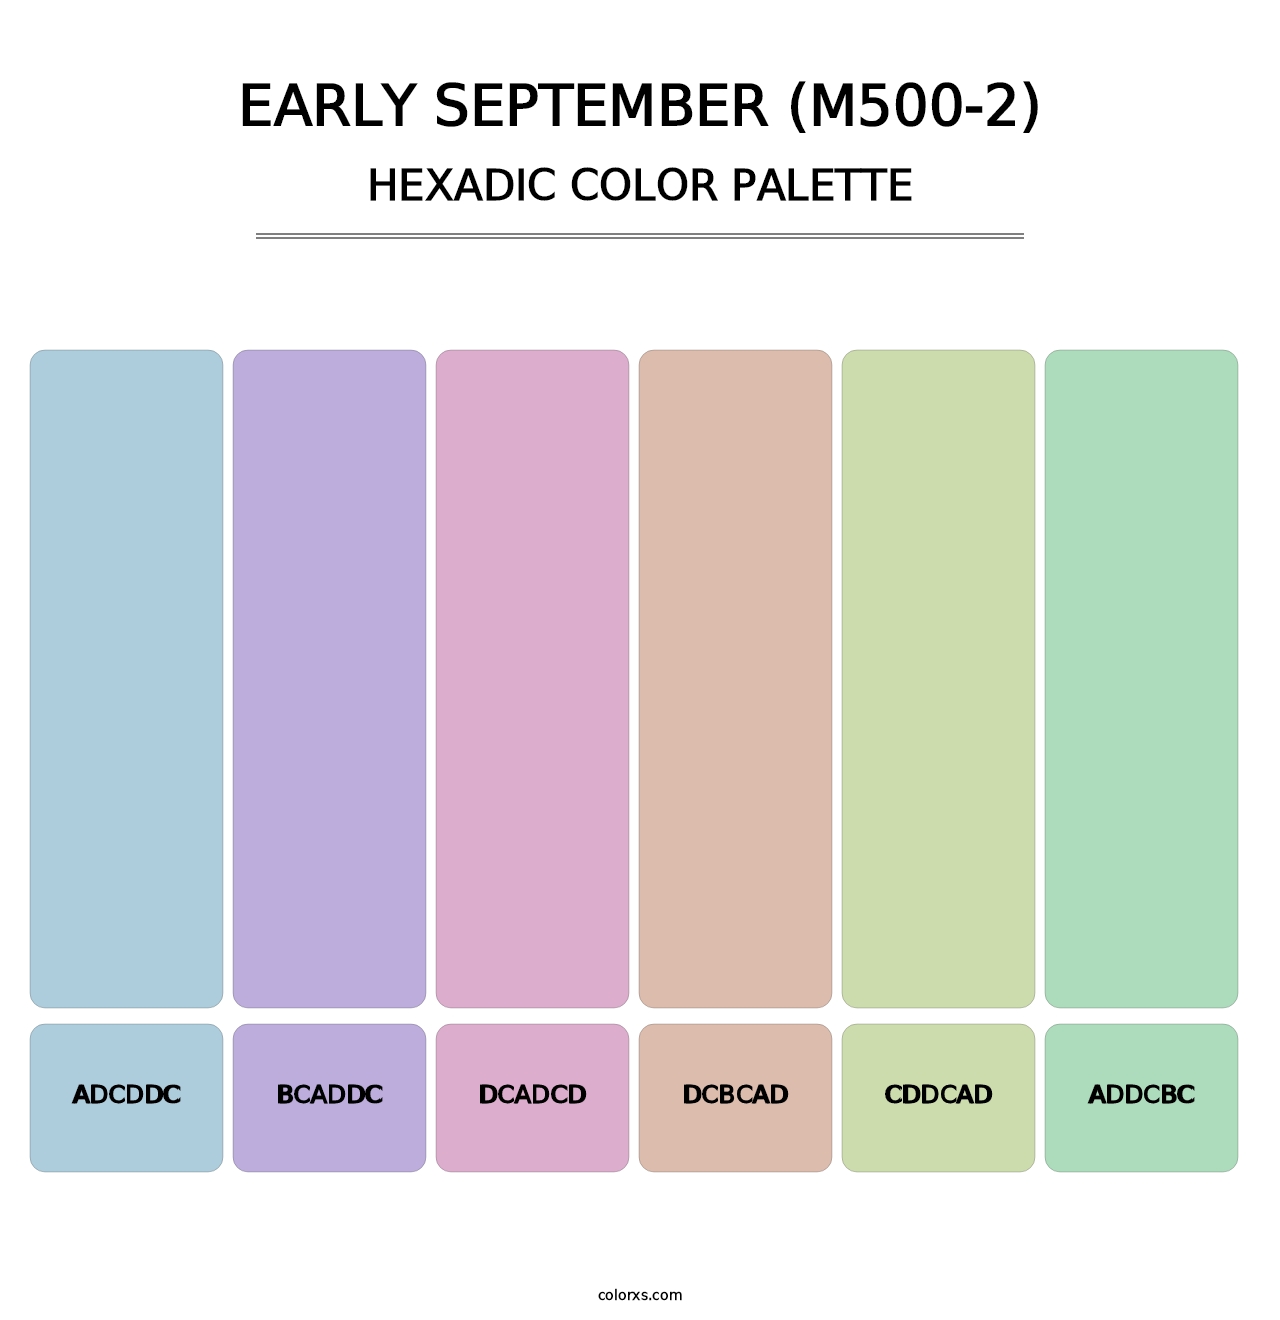 Early September (M500-2) - Hexadic Color Palette